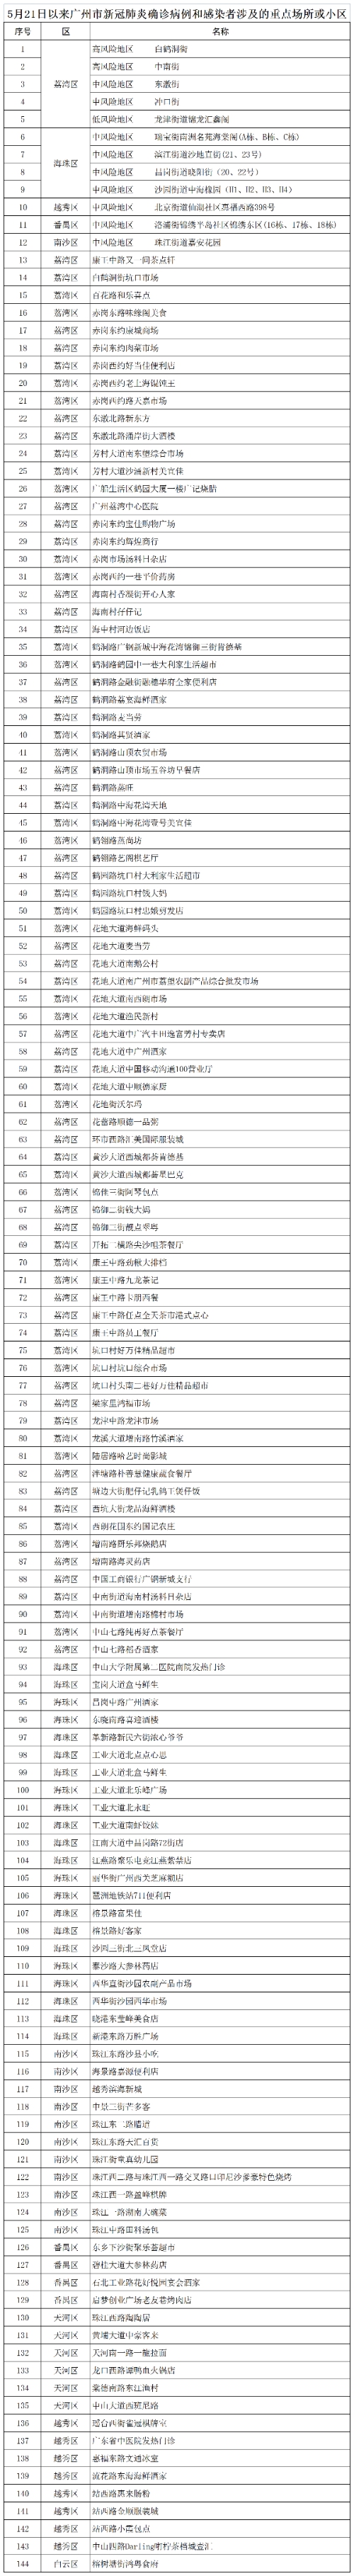 广州通报感染者涉及的144个重点场所或小区